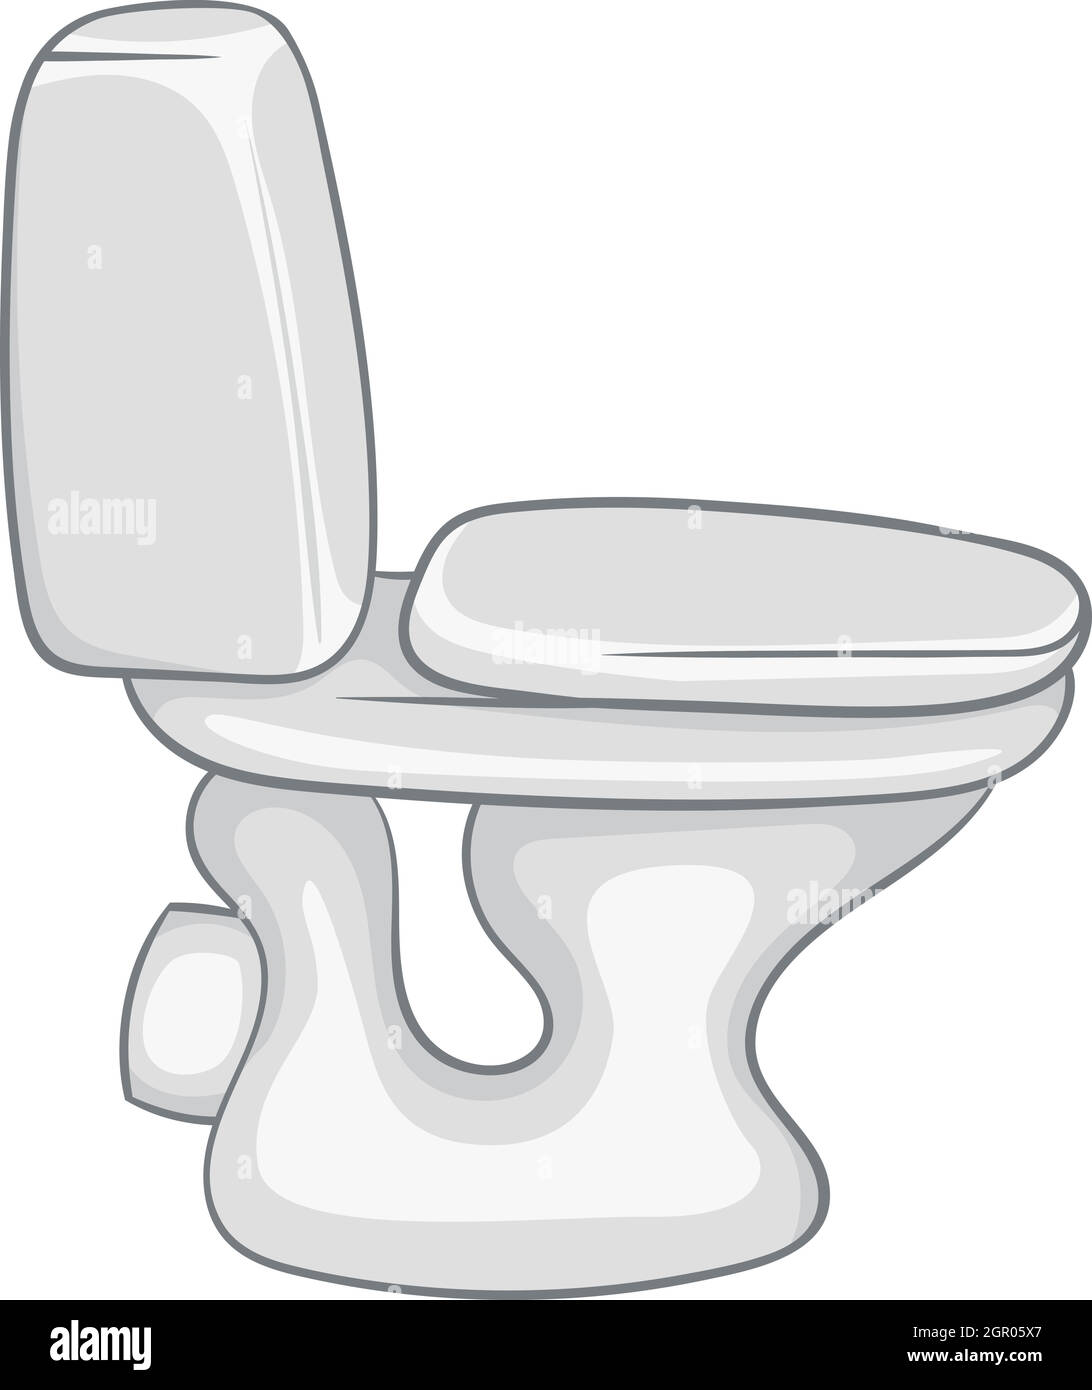 Weiße WC-Schüssel-Symbol, Cartoon-Stil Stock Vektor